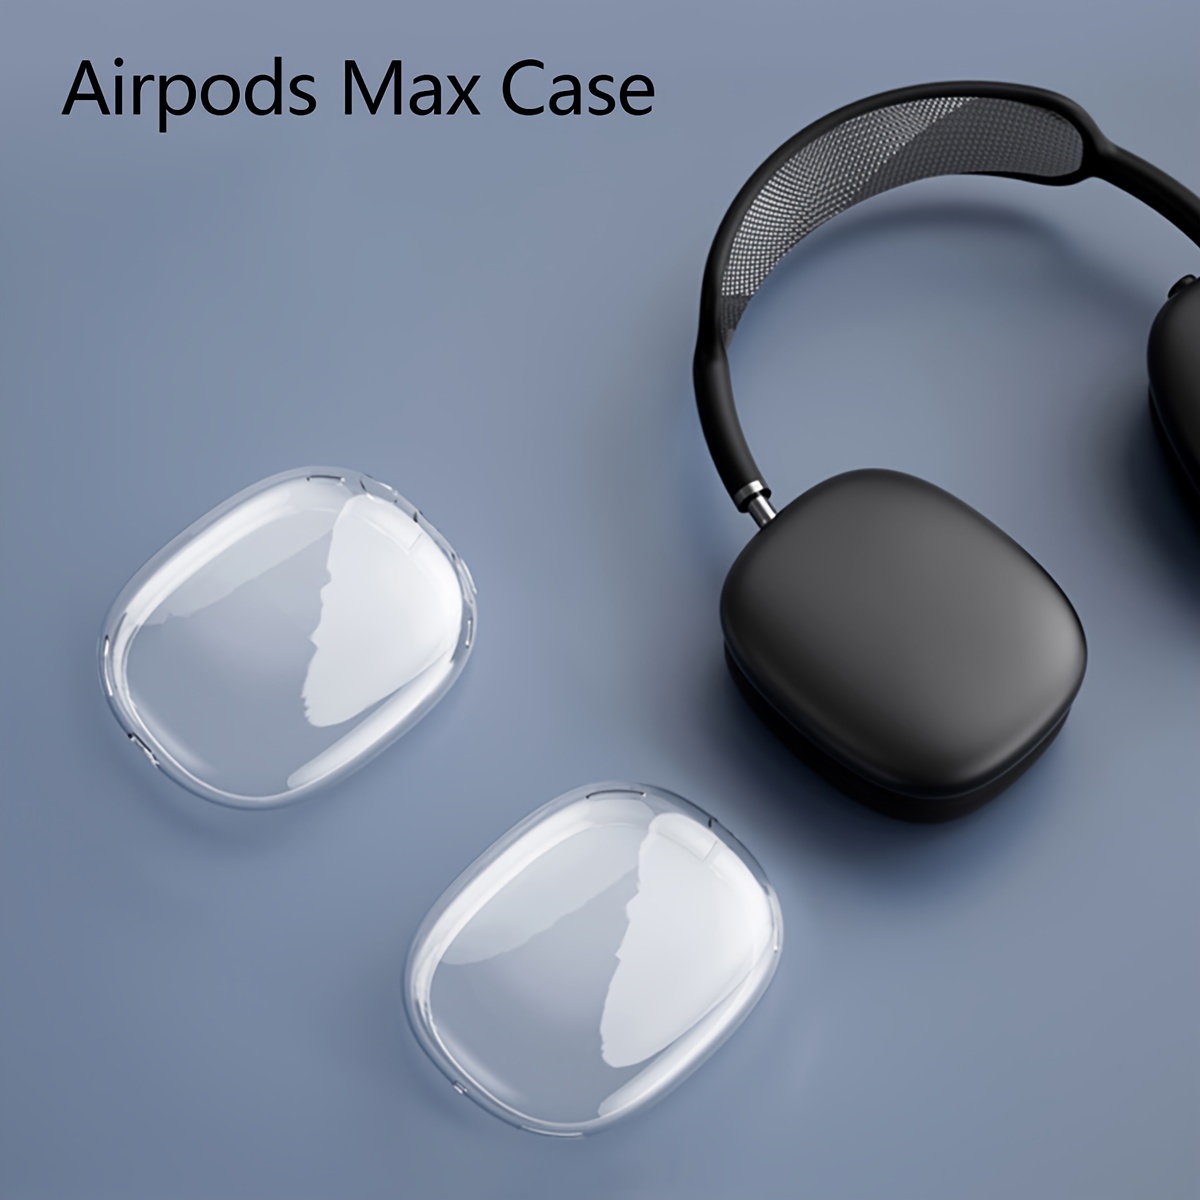 Support en Cuir pour AirPods Max - Artisanat de qualité supérieure